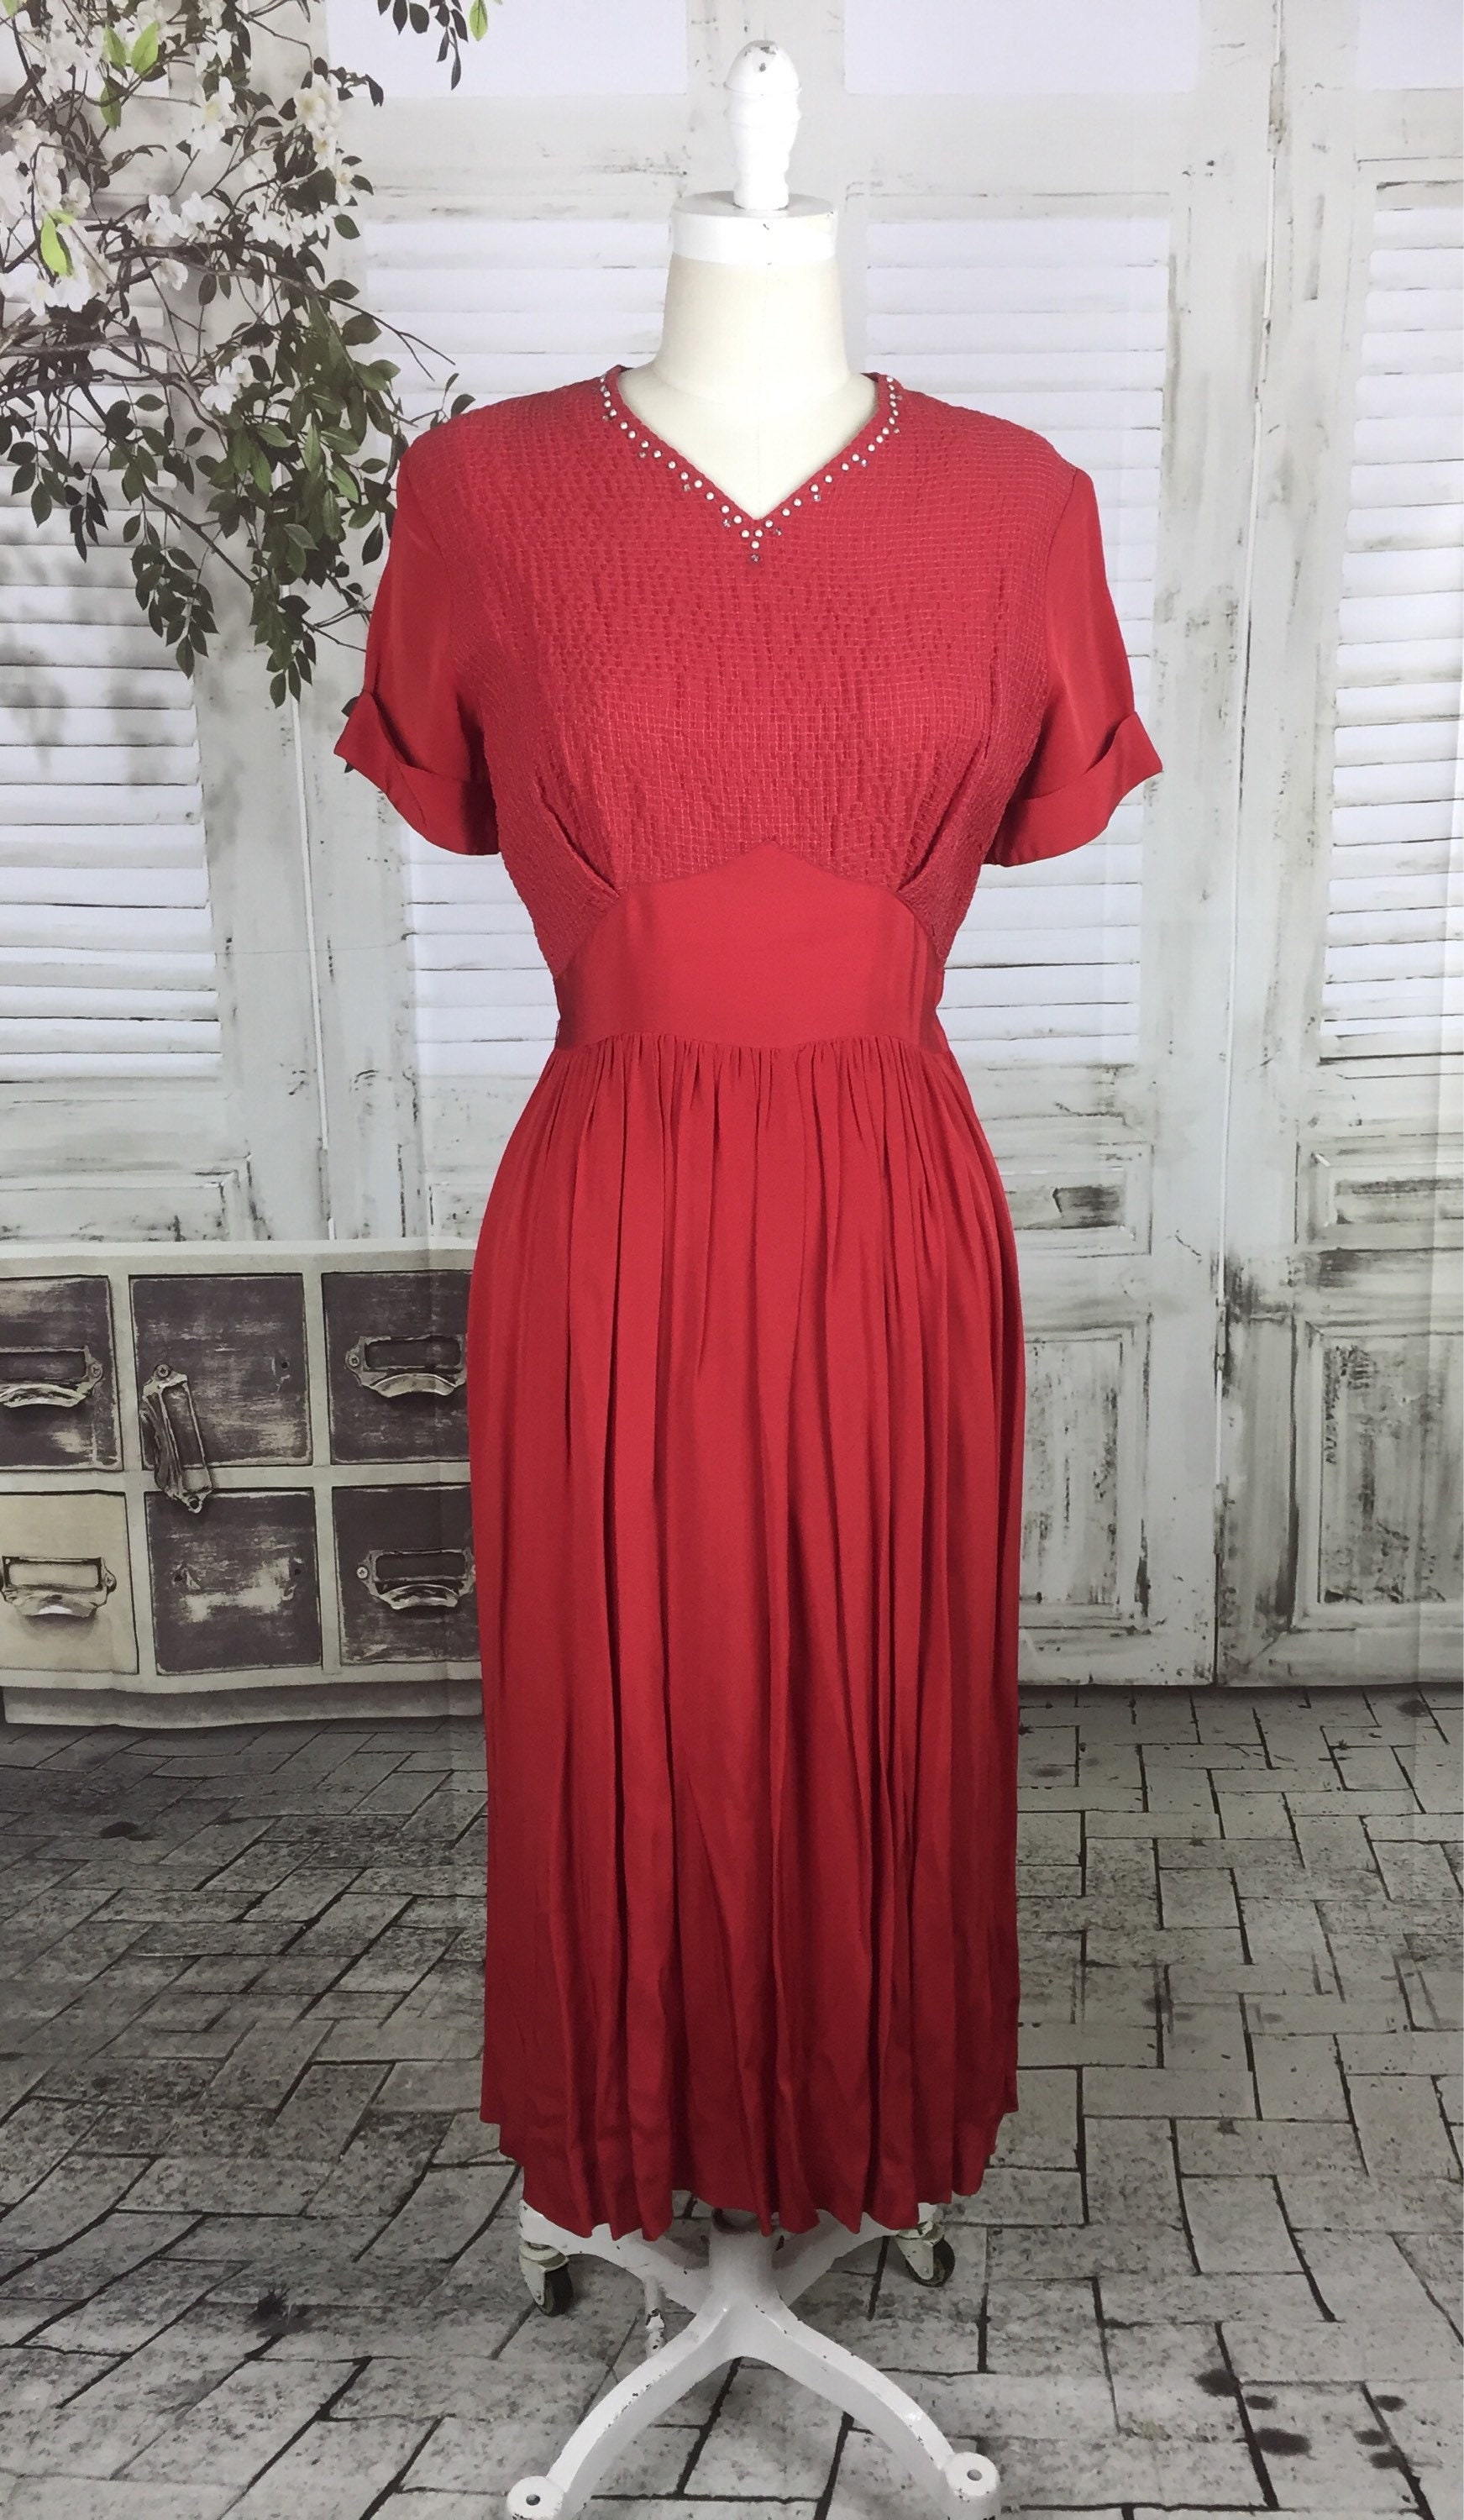 Original 1940s Vintage Red Studded Dress - Etsy UK